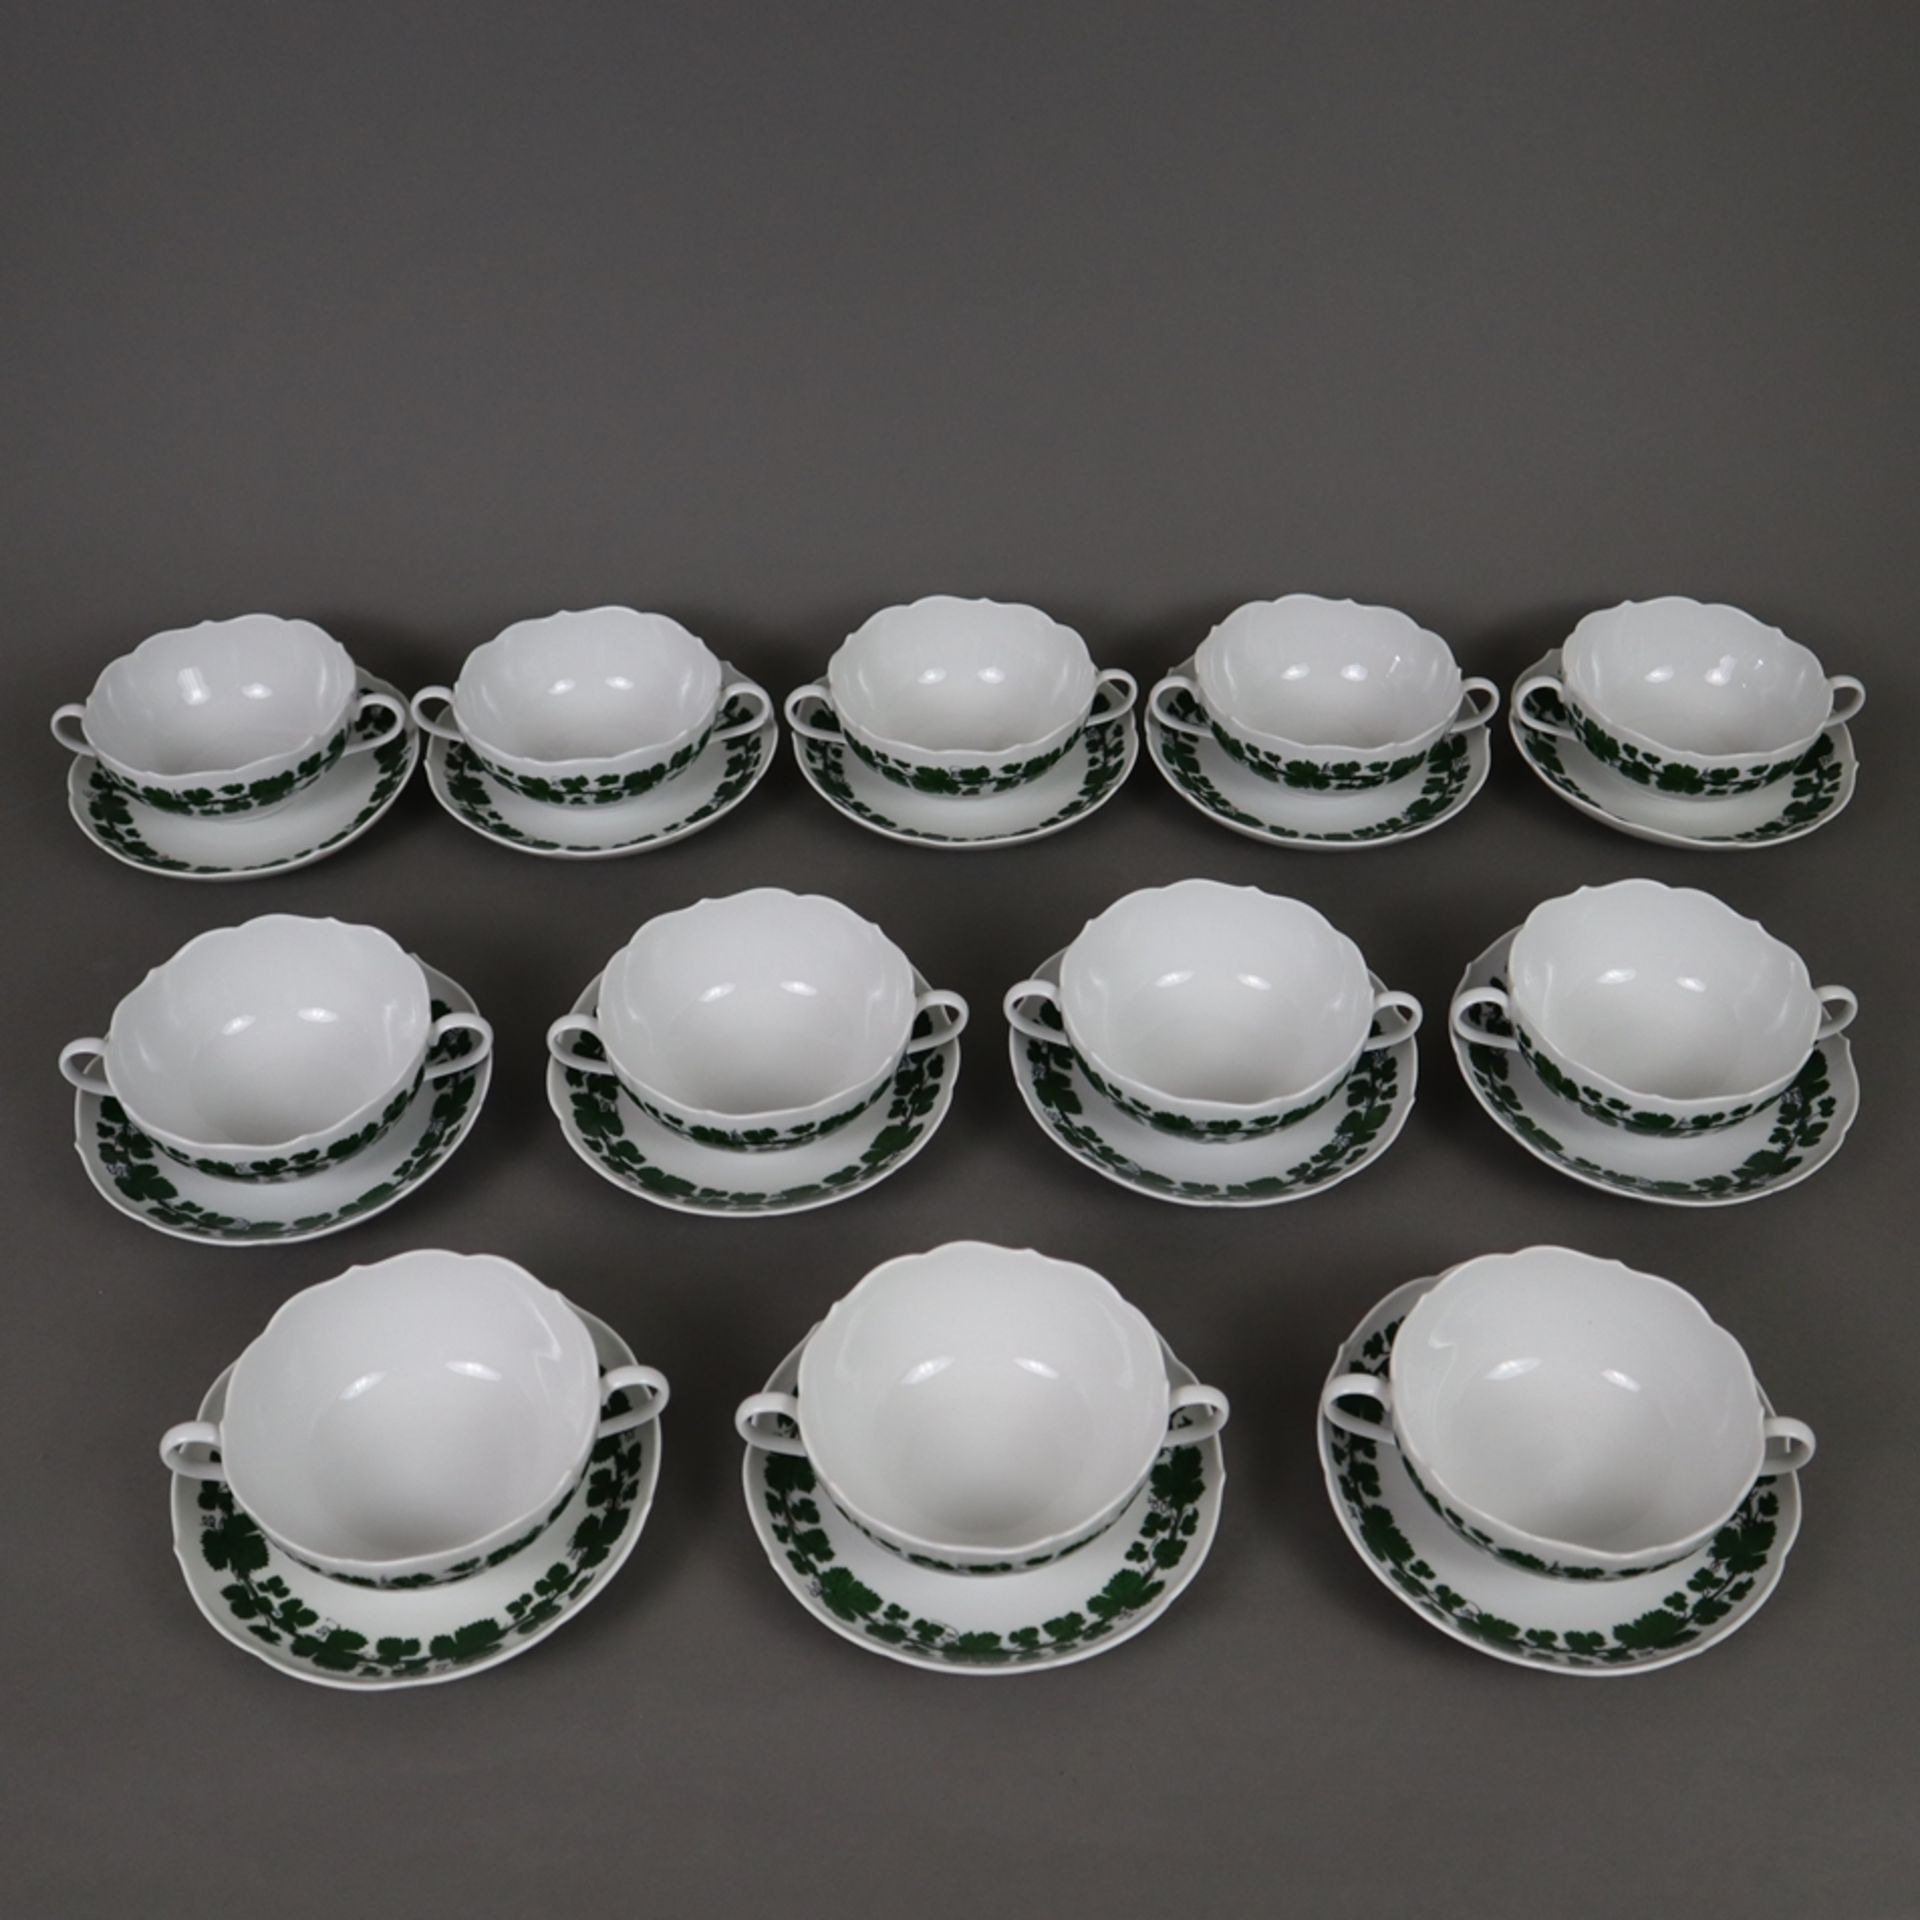 12 Suppentassen mit Untertassen - Meissen, Porzellan, Weinlaubdekor in Grün und Schwarz, Form "Neue